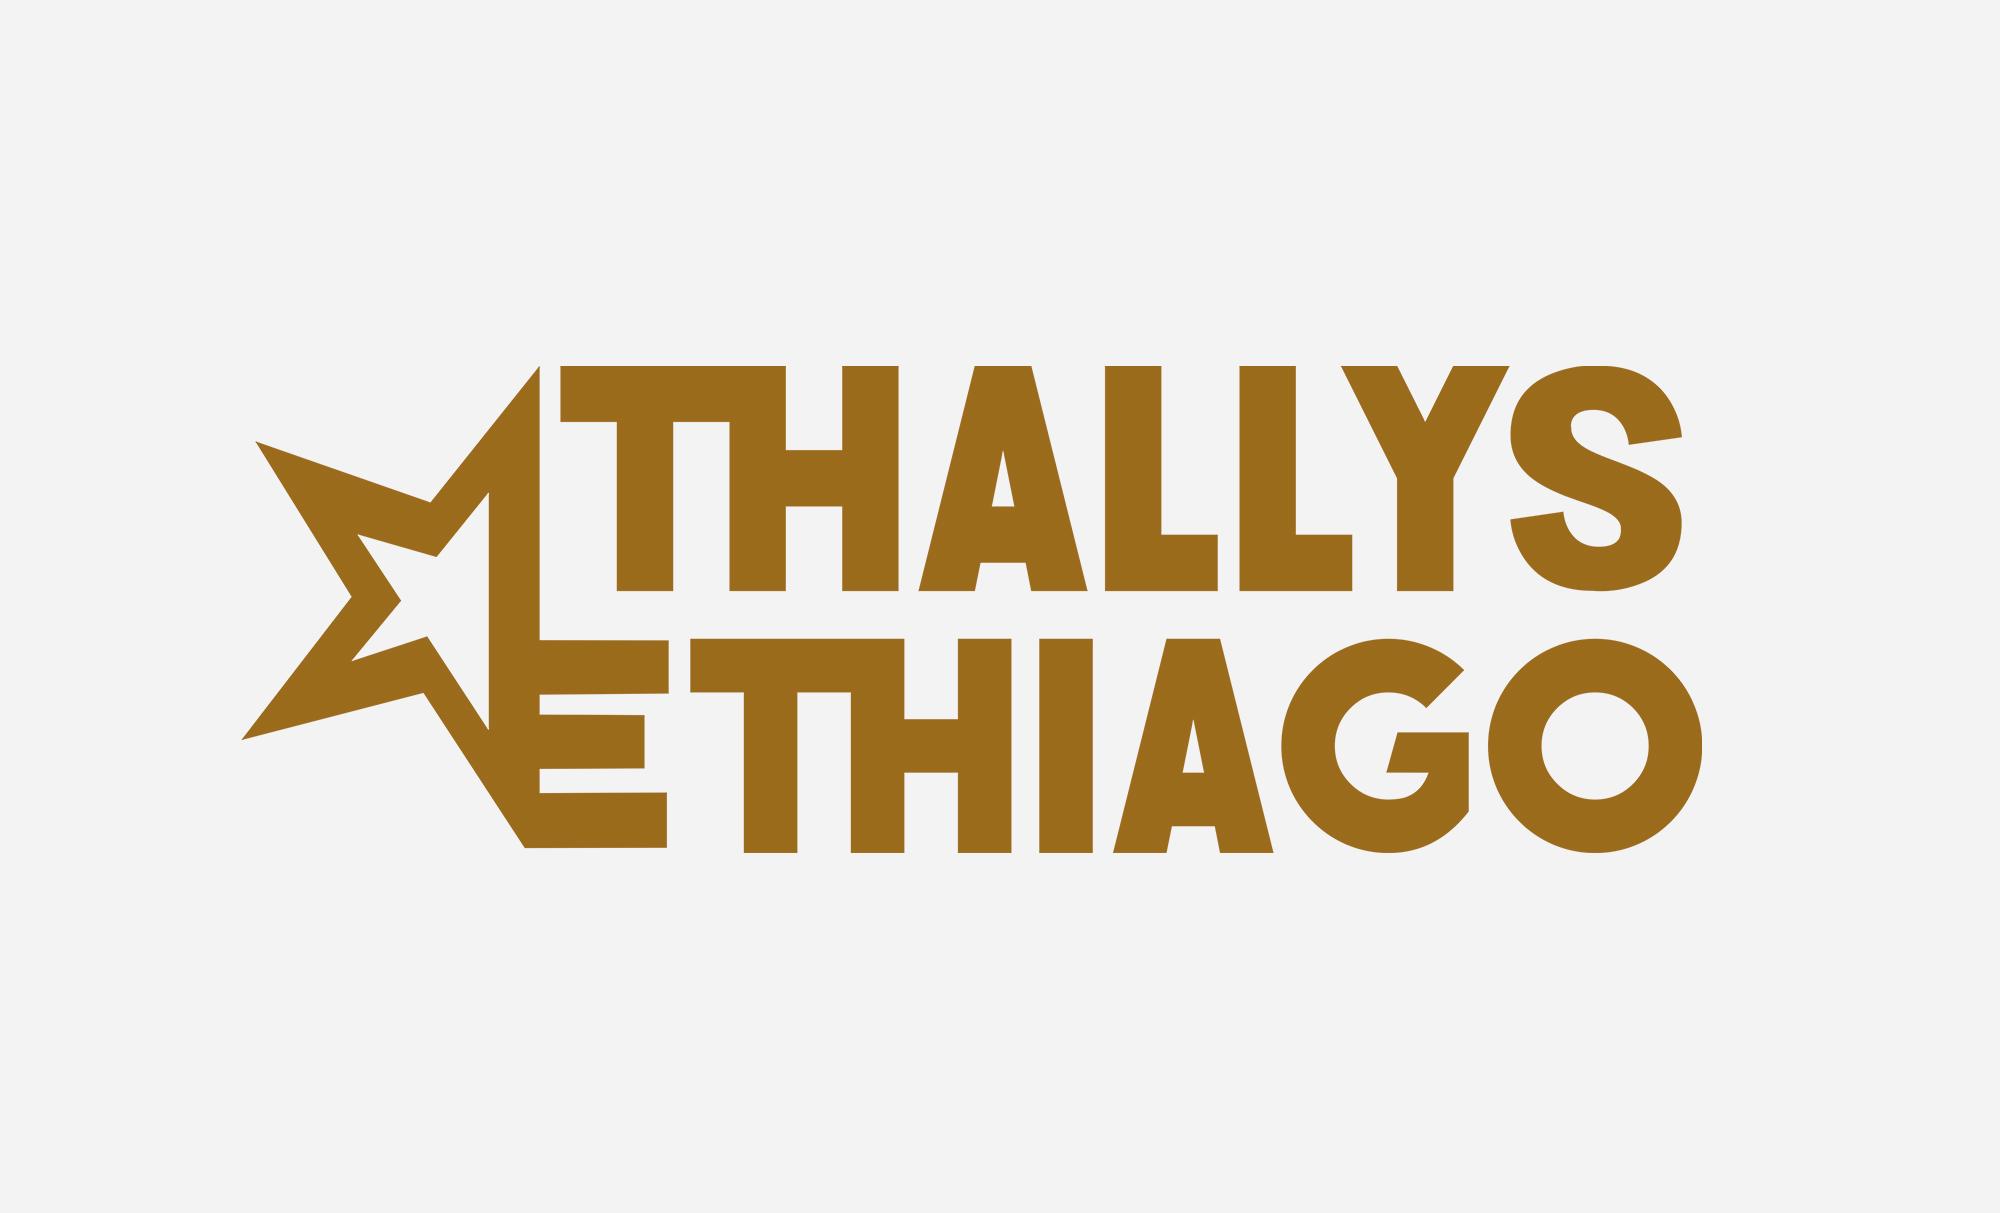 Thallys e Thiago - Cliente AsWEb